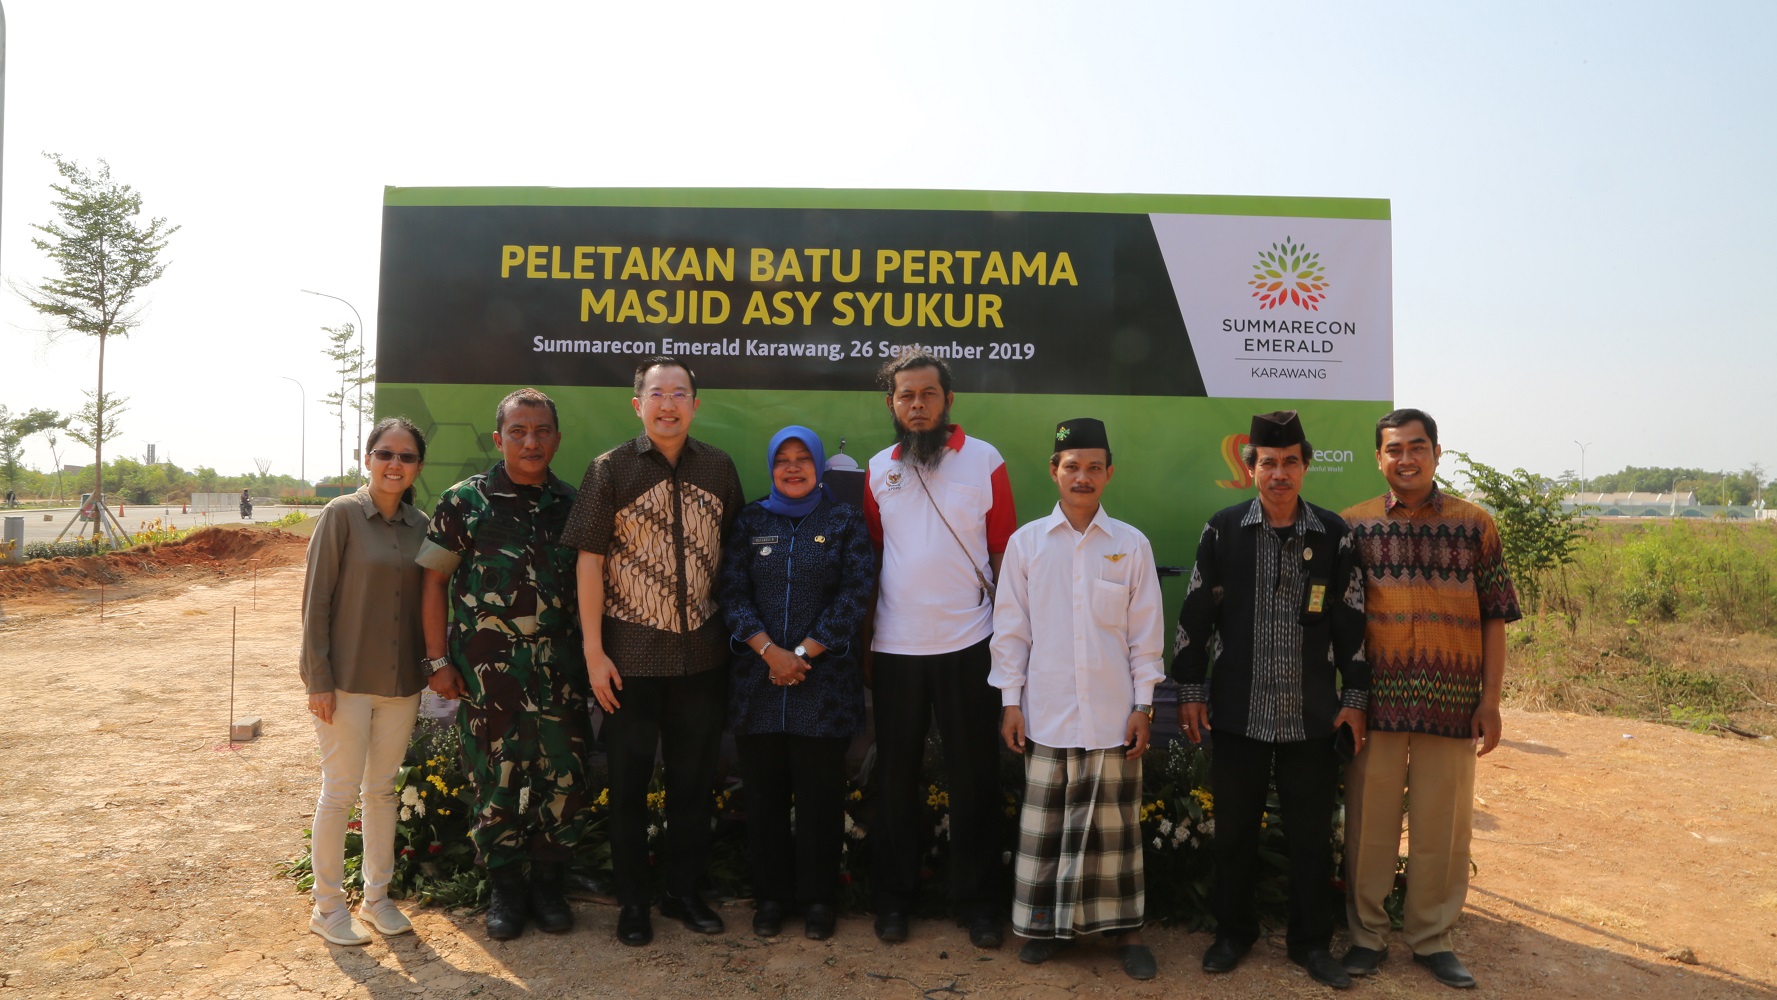 Peletakan Batu Pertama Masjid Asy Syukur, Summarecon Emerald Karawang